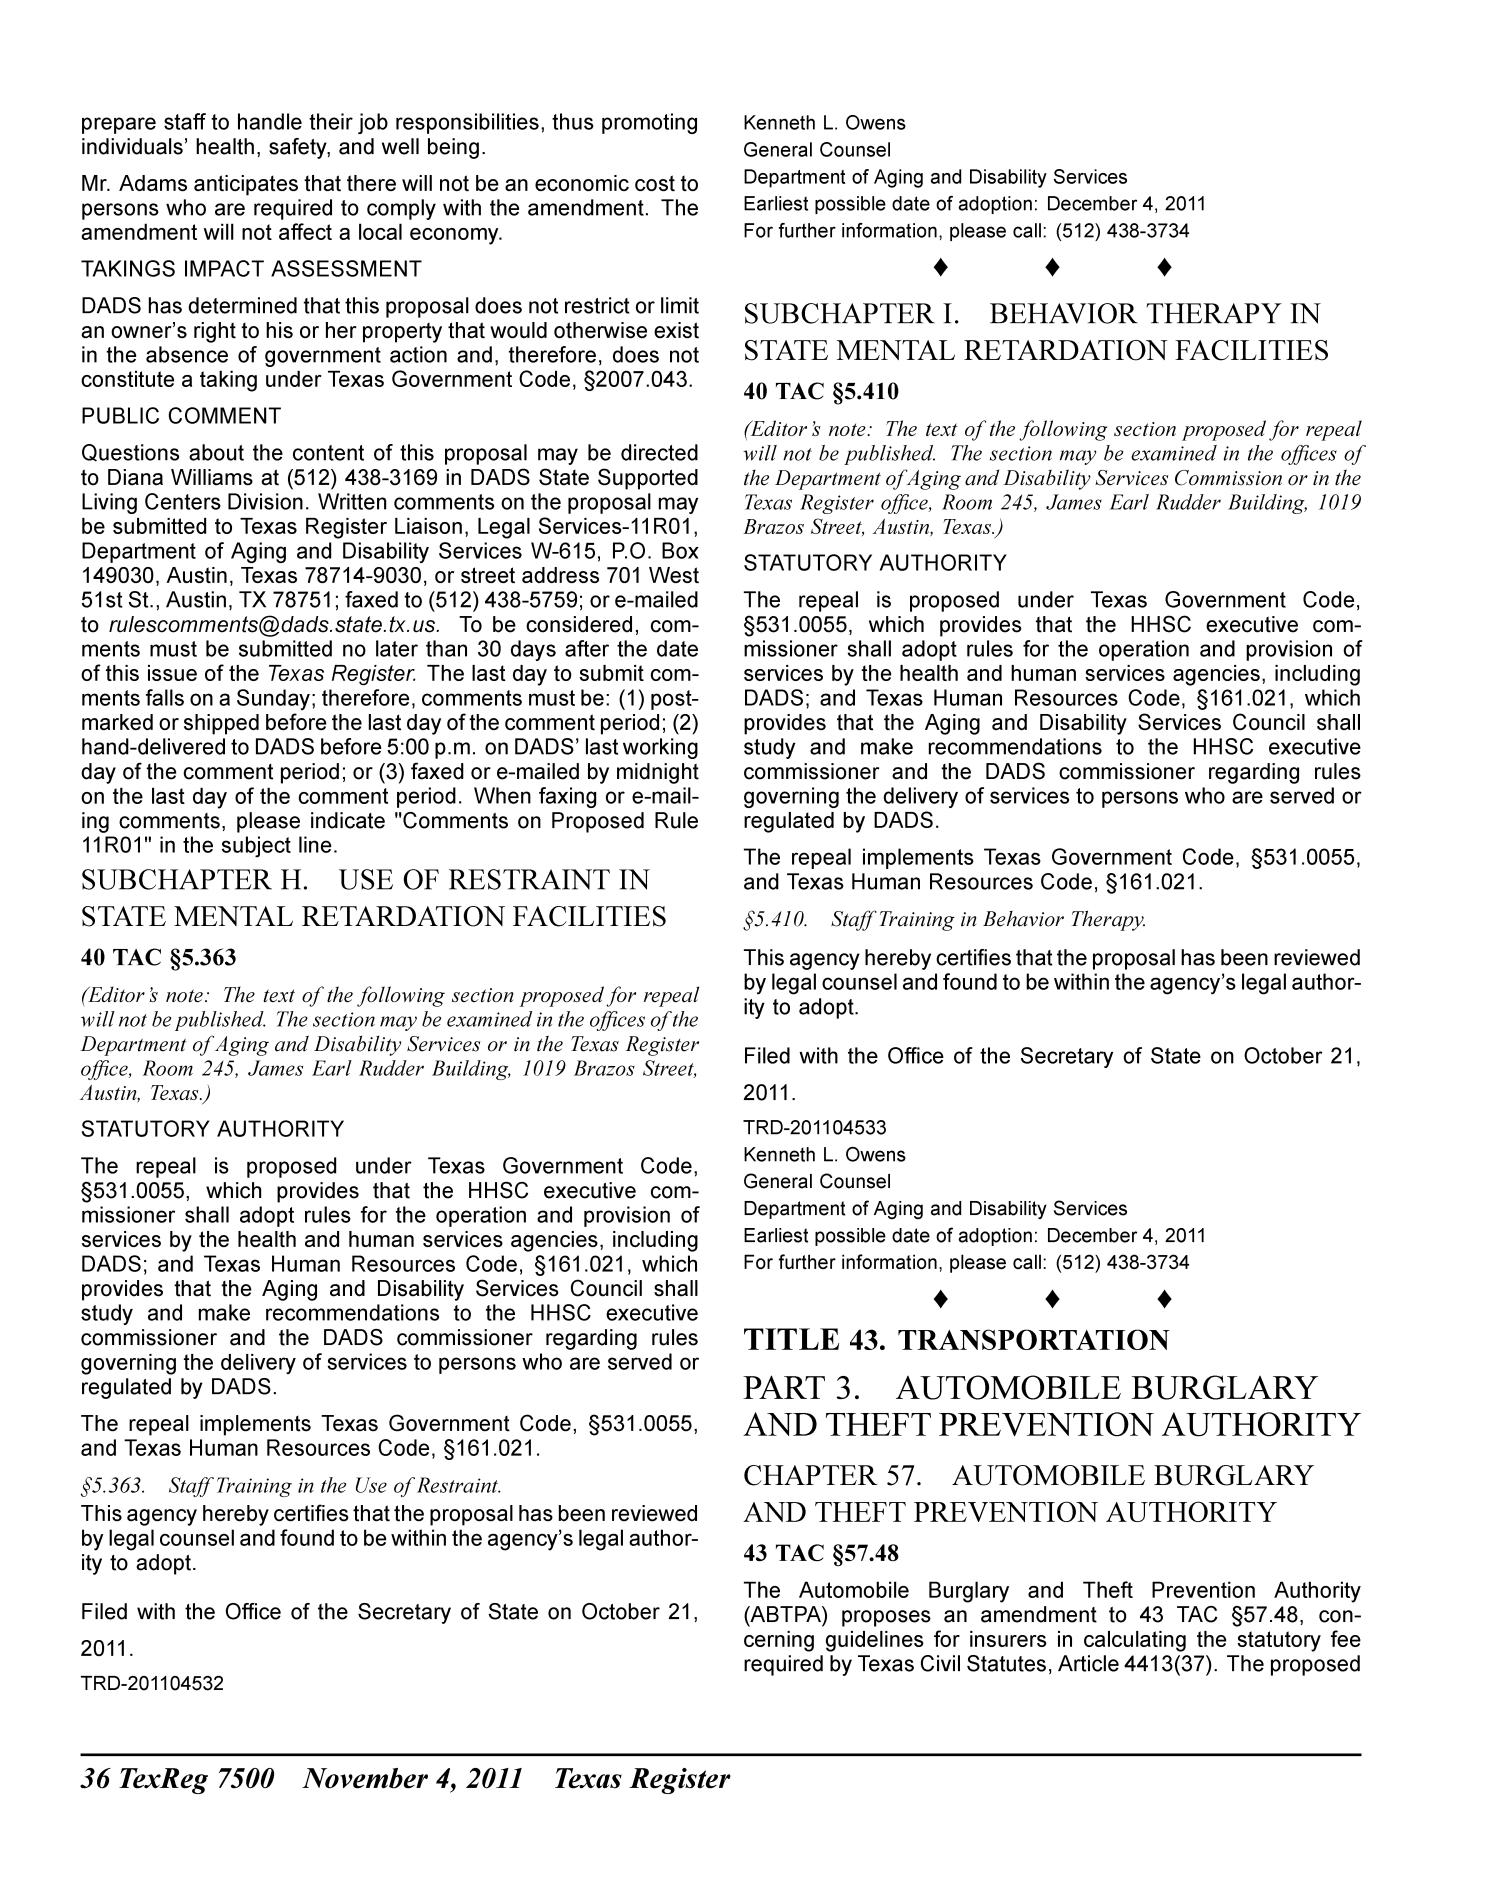 Texas Register, Volume 36, Number 44, Pages 7417-7610, November 4, 2011
                                                
                                                    7500
                                                